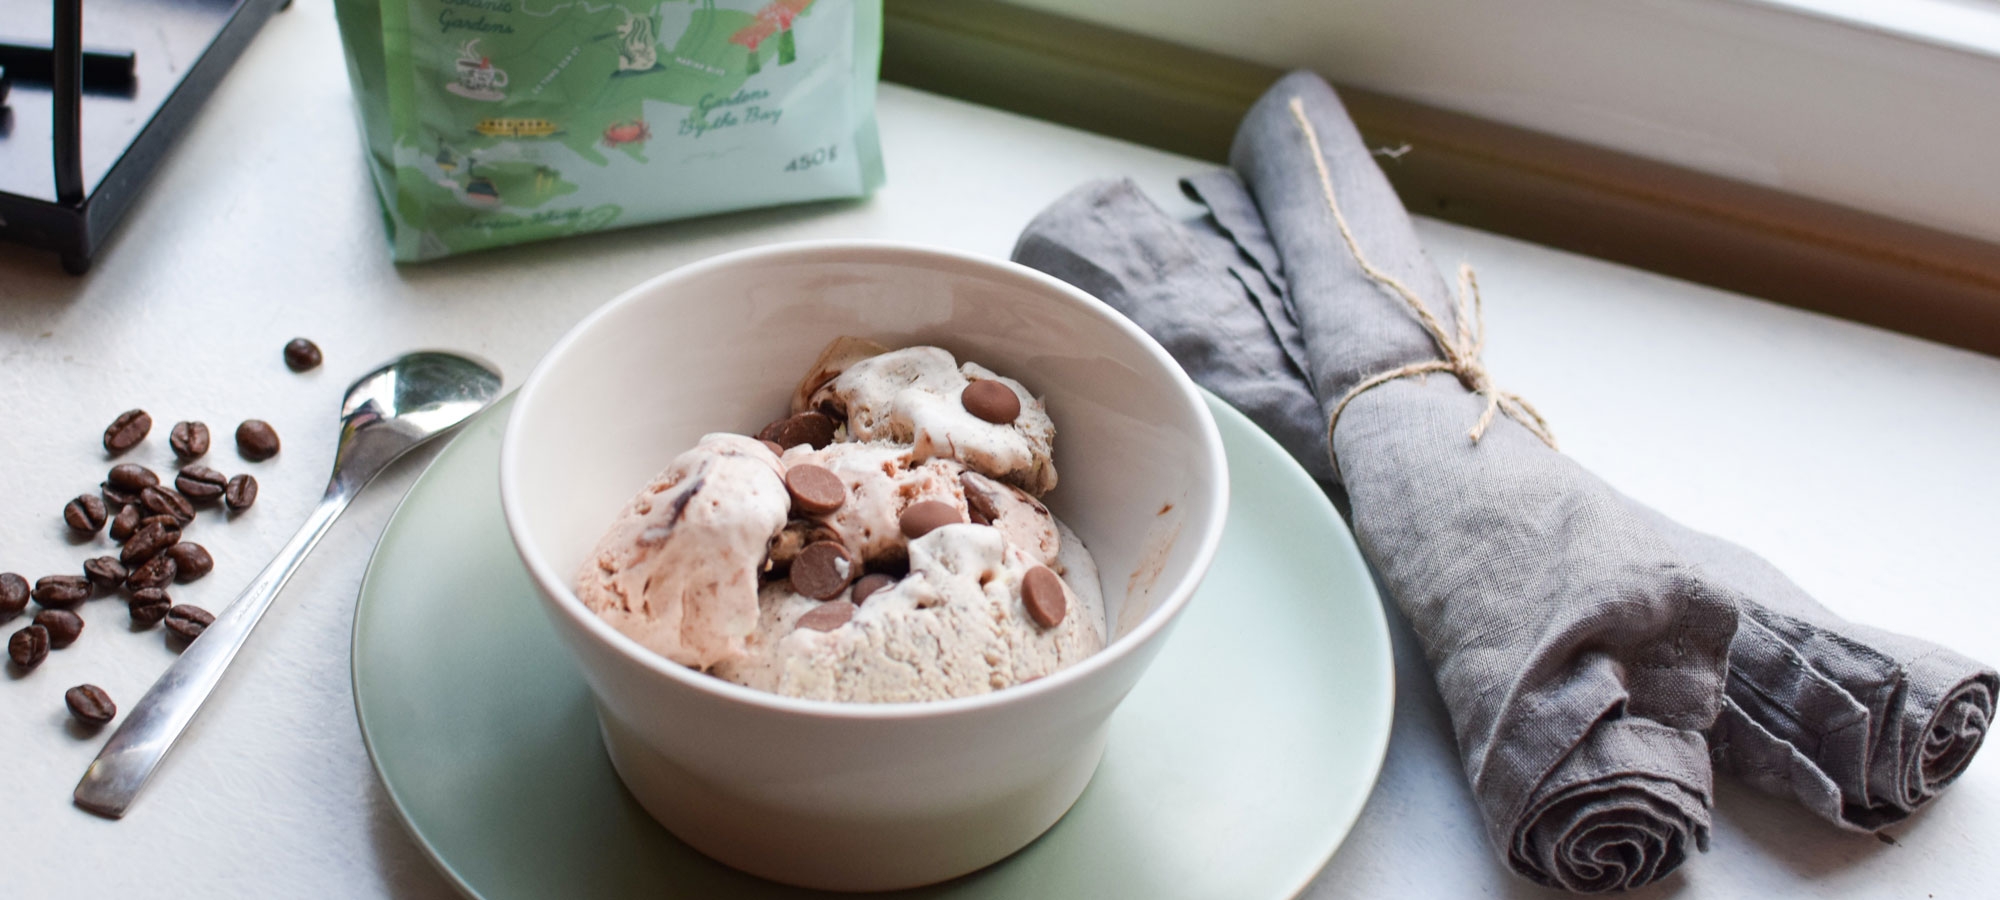 Suklaan ja kahvin makuinen cappuccino-jäätelö valmistuu kotona helposti ilman jäätelökonetta